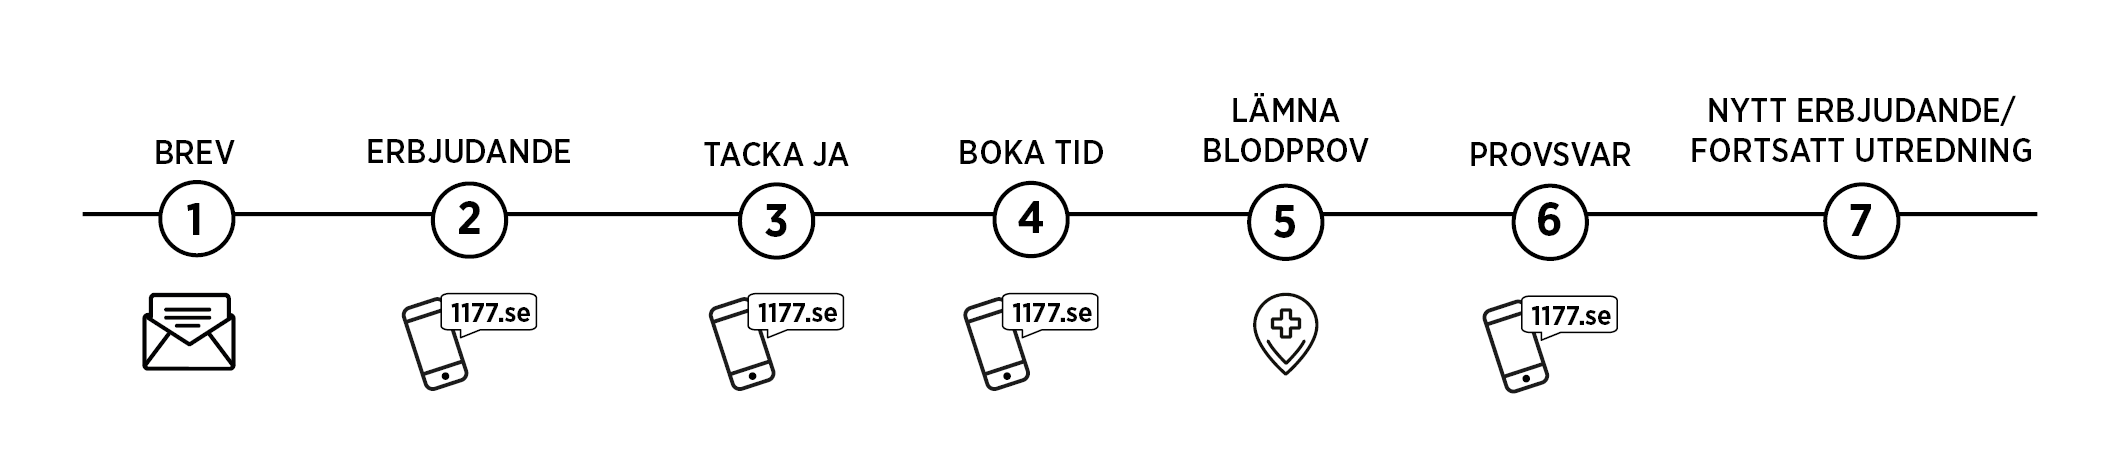 Bilden visar de olika stegen i erbjudandet – från brev till provsvar efter blodprov. 